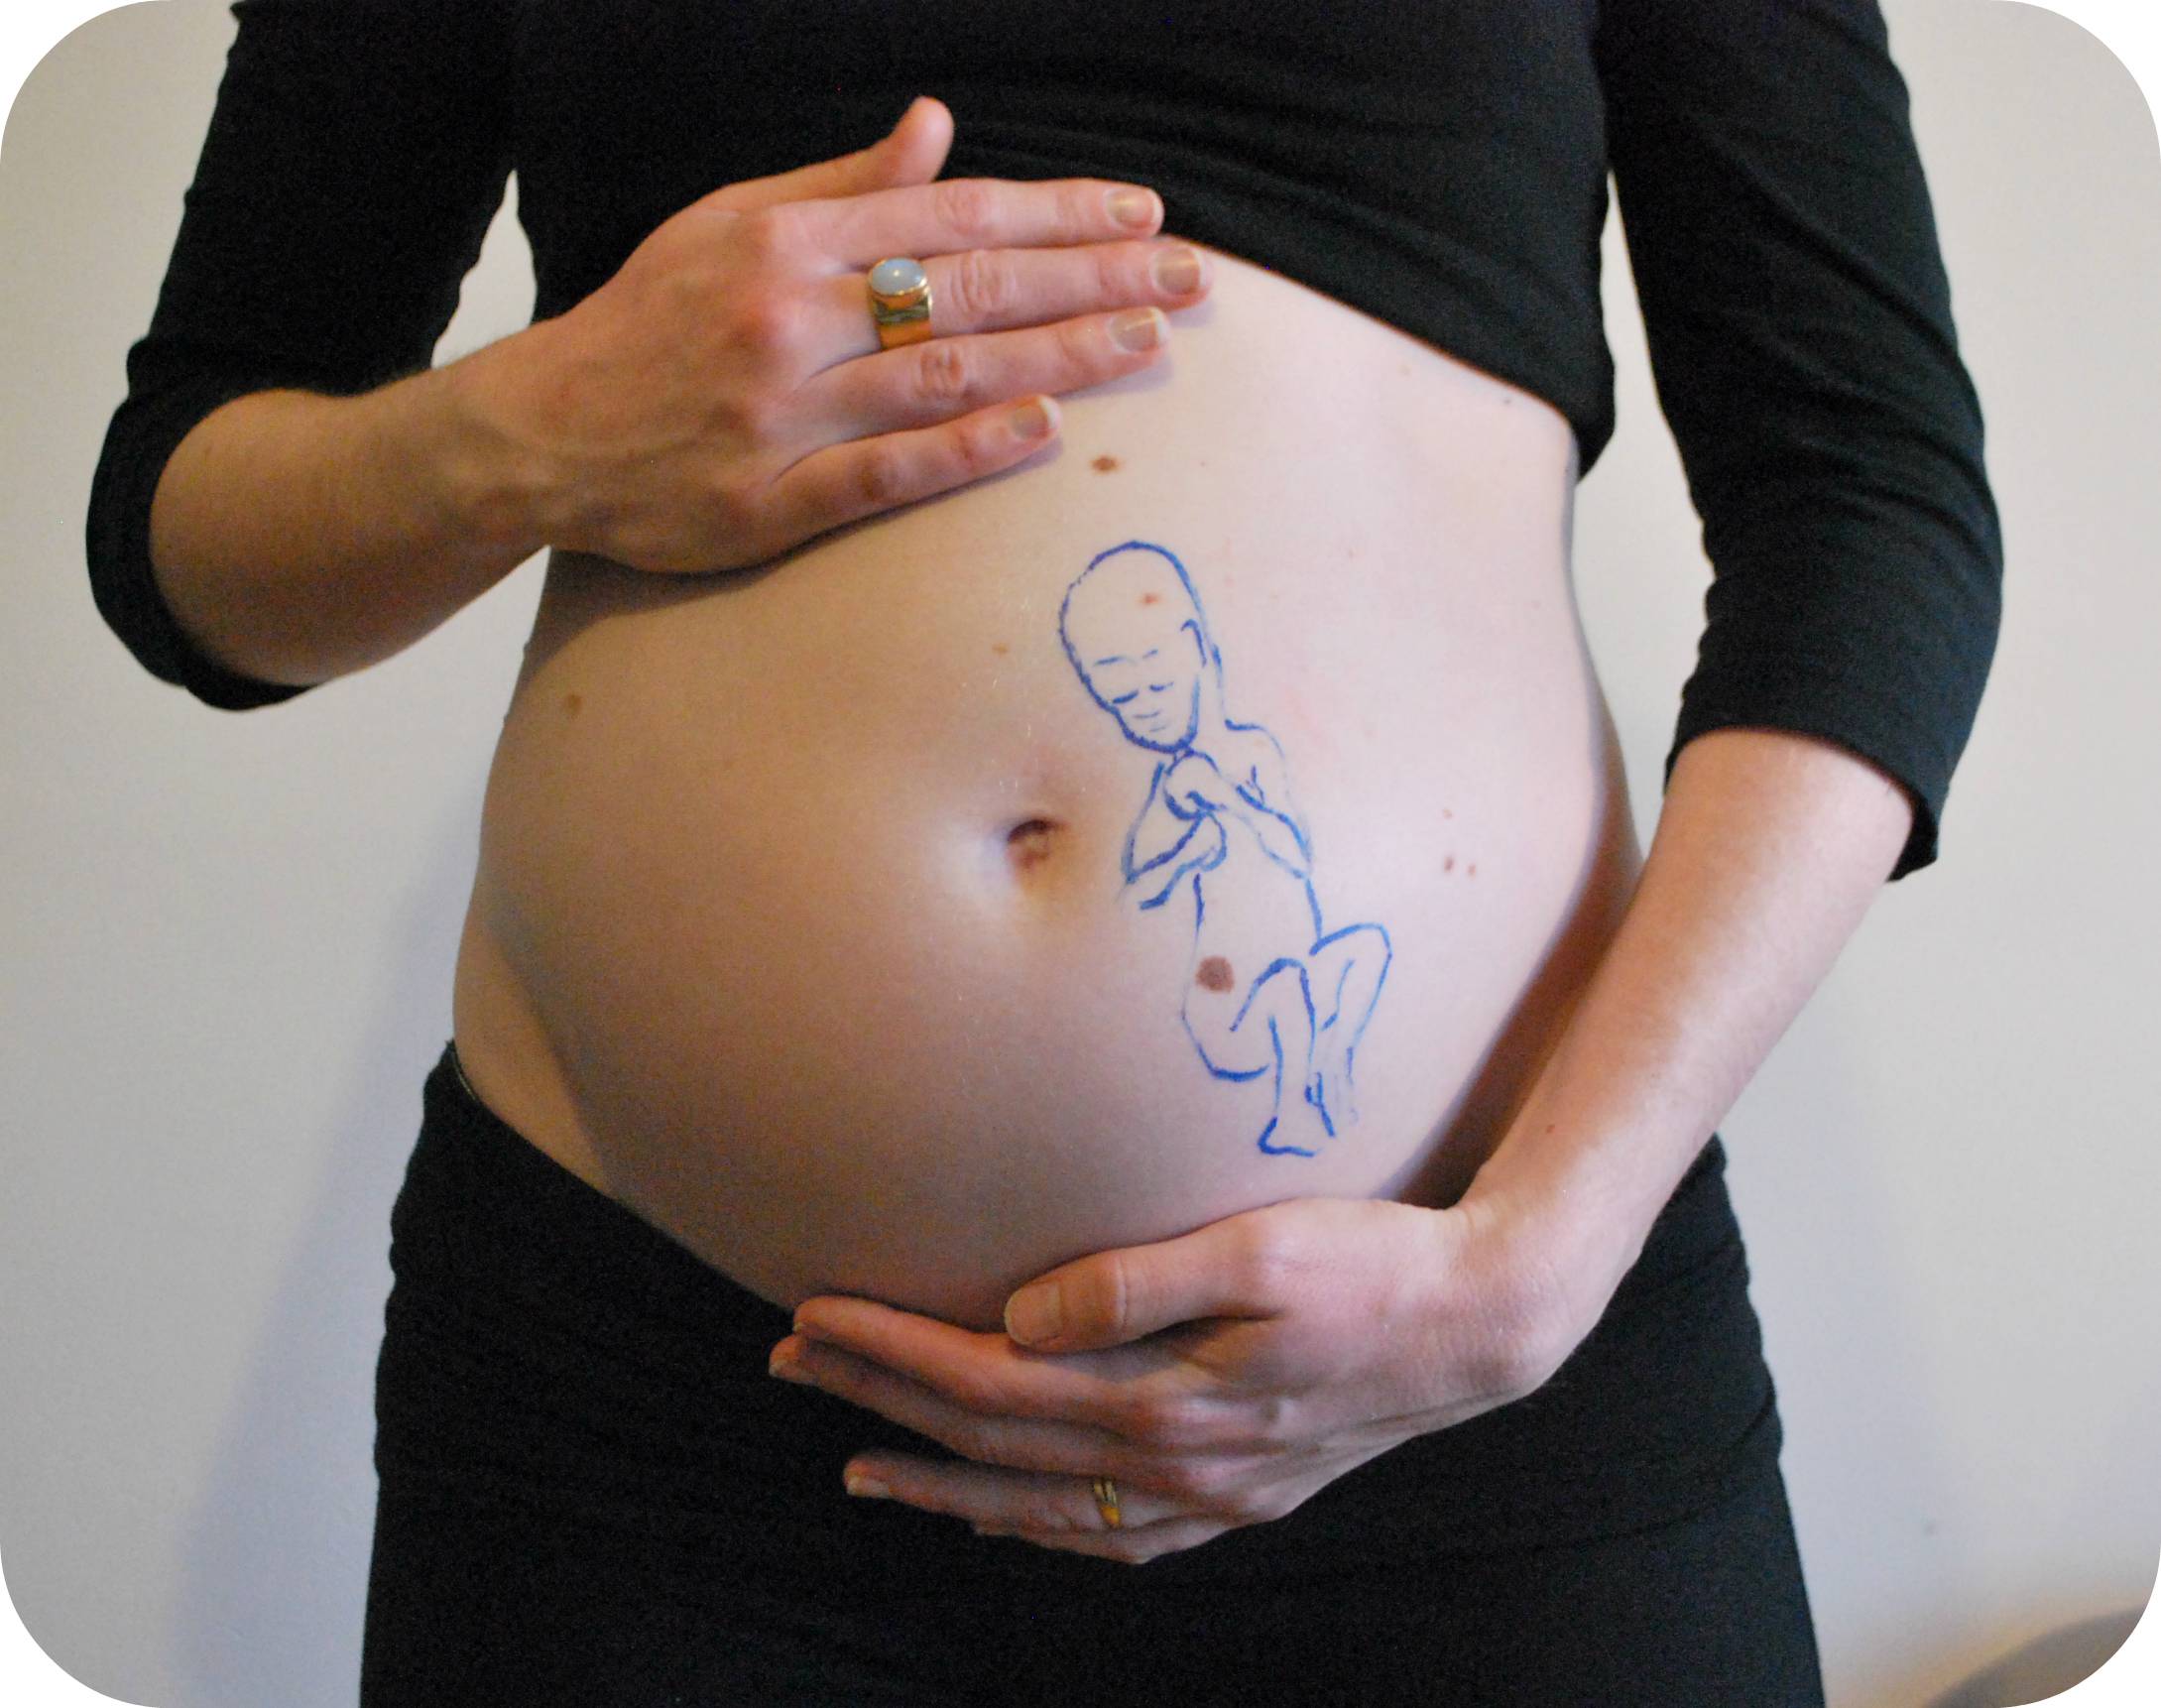 18 неделя беременности: размер плода, опасные симптомы, что происходит. фото + видео